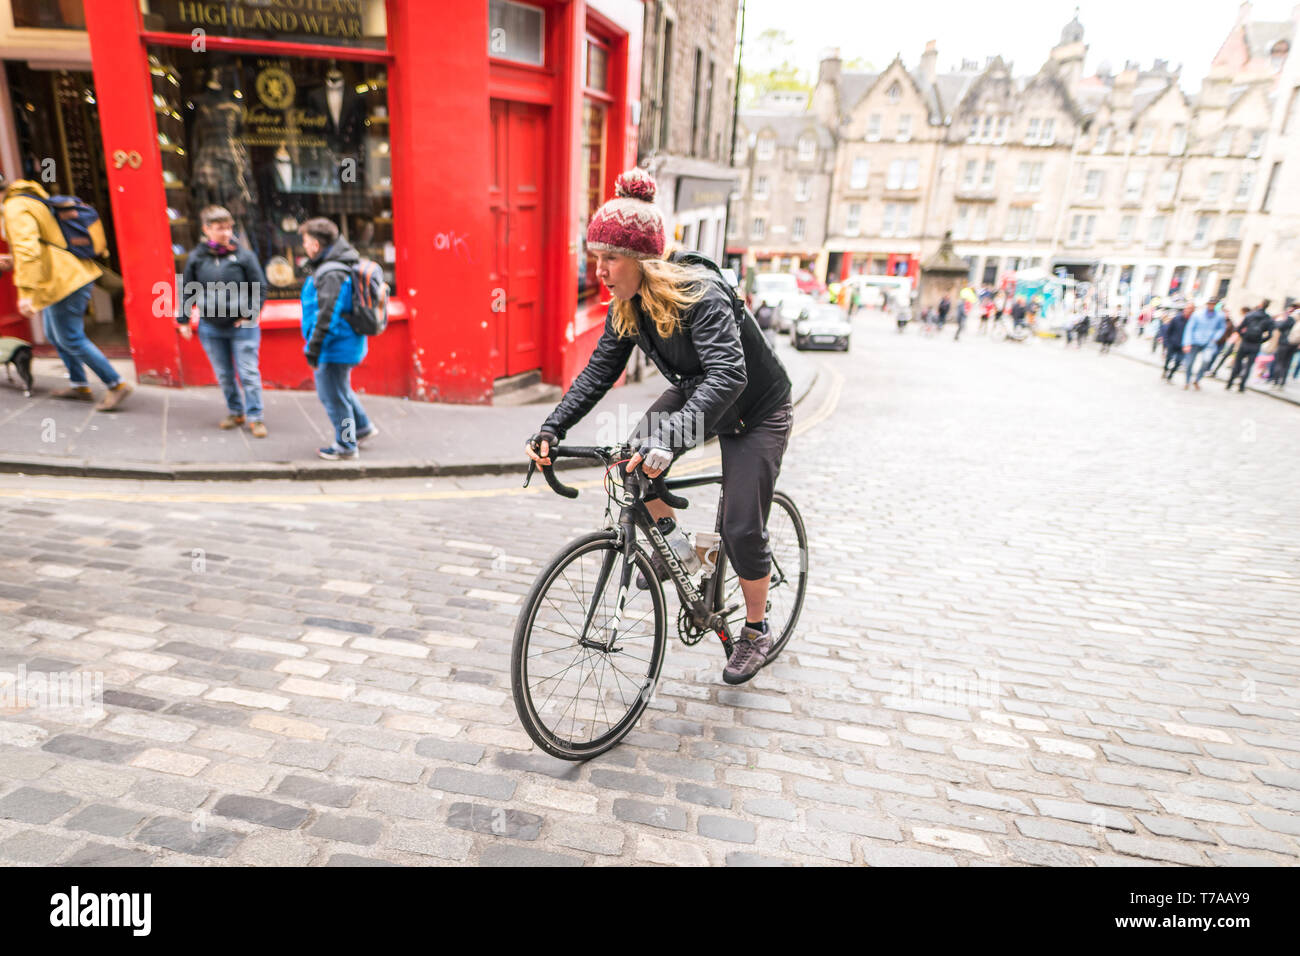 Sun vom 5. Mai 2019. Edinburgh, Großbritannien. Aktive Nation Kommissar für Schottland Lee Craigie Zyklen bis Victoria Street als Teil der Stadt den ersten offenen Straßen. Stockfoto